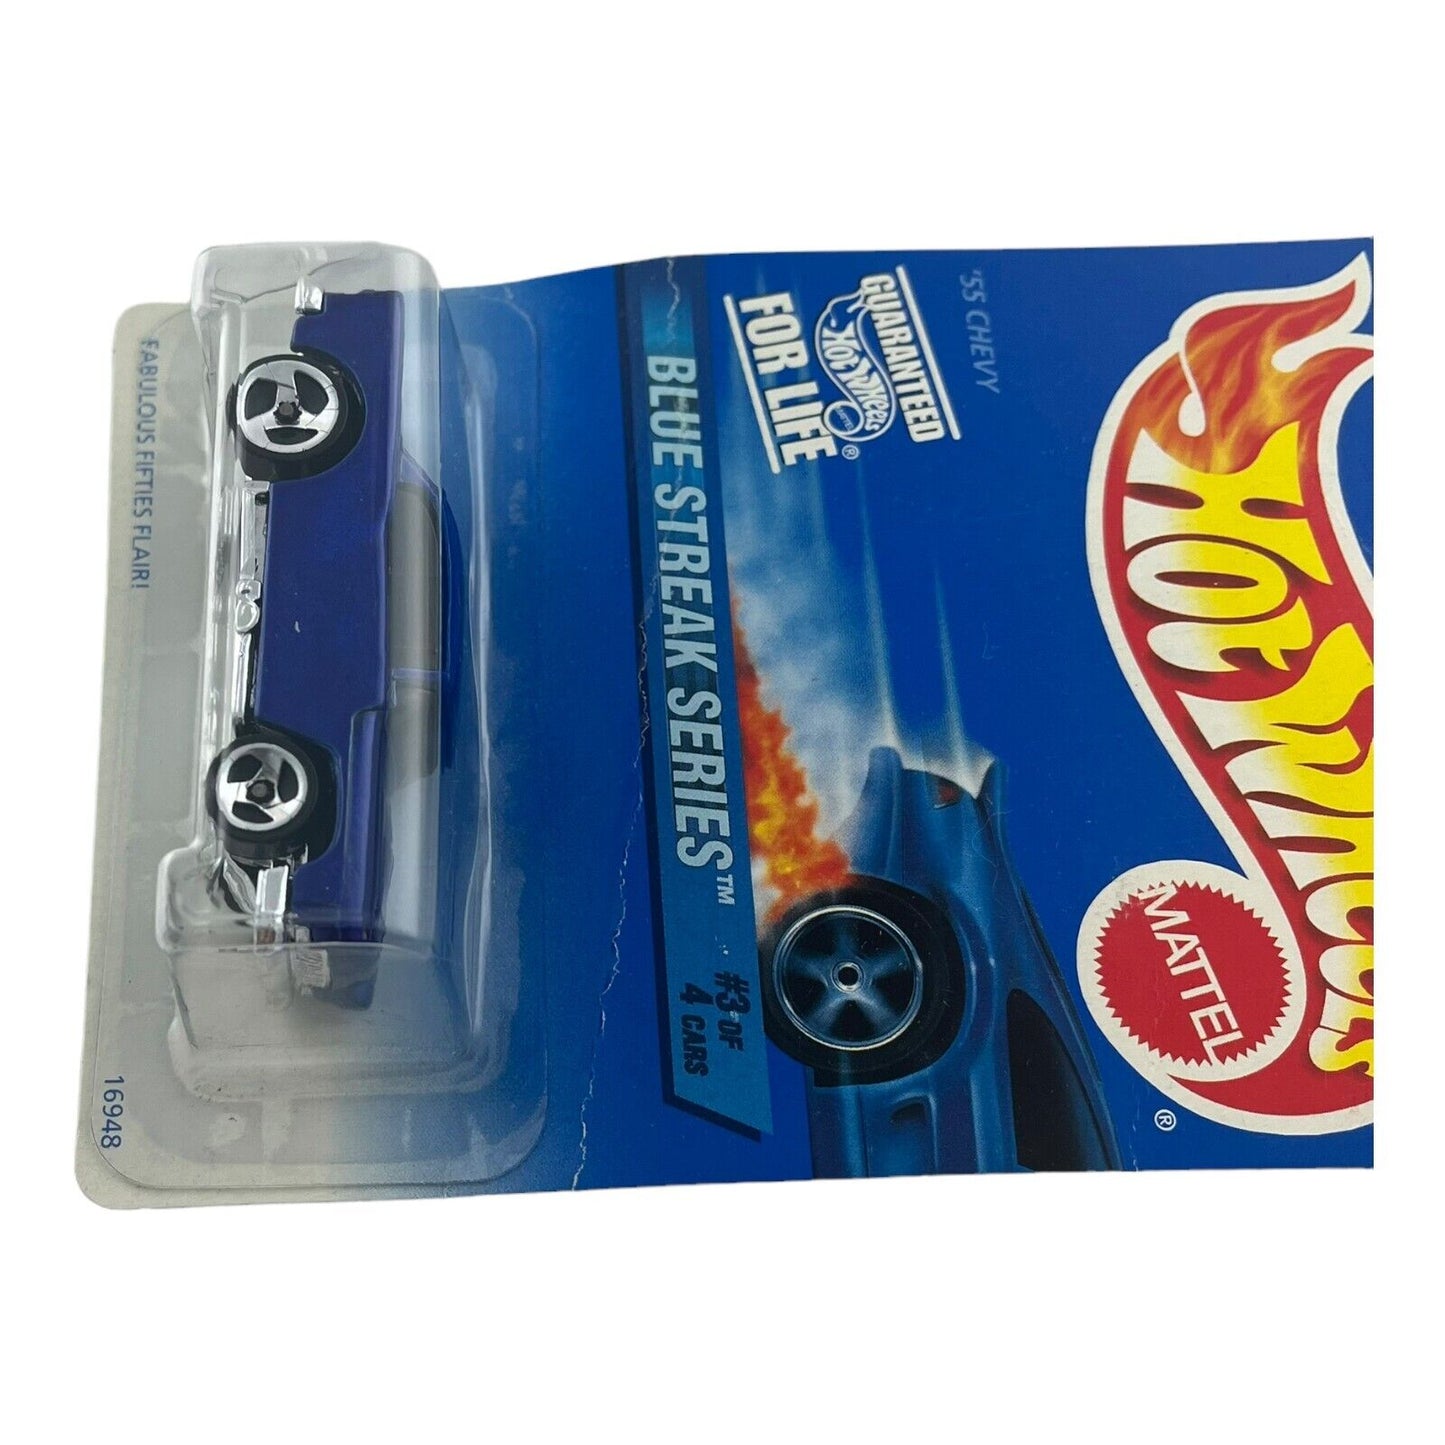 Hot Wheels Blue Streak Series '55 Chevy Diecast Vehicle #575 1996 Mattel